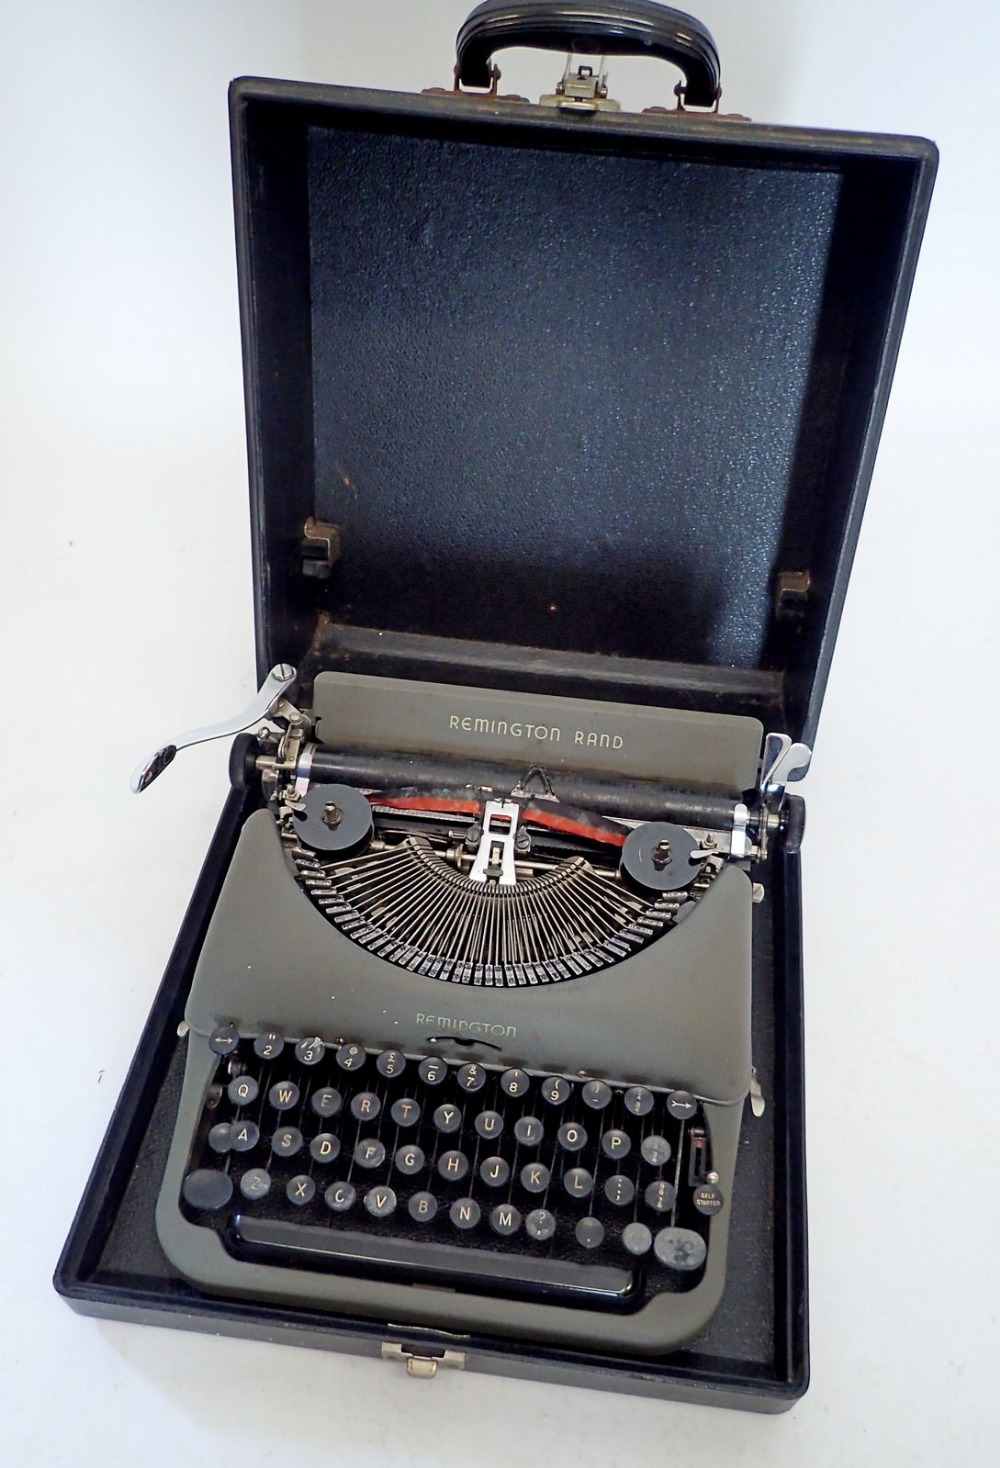 A Remington vintage typewriter